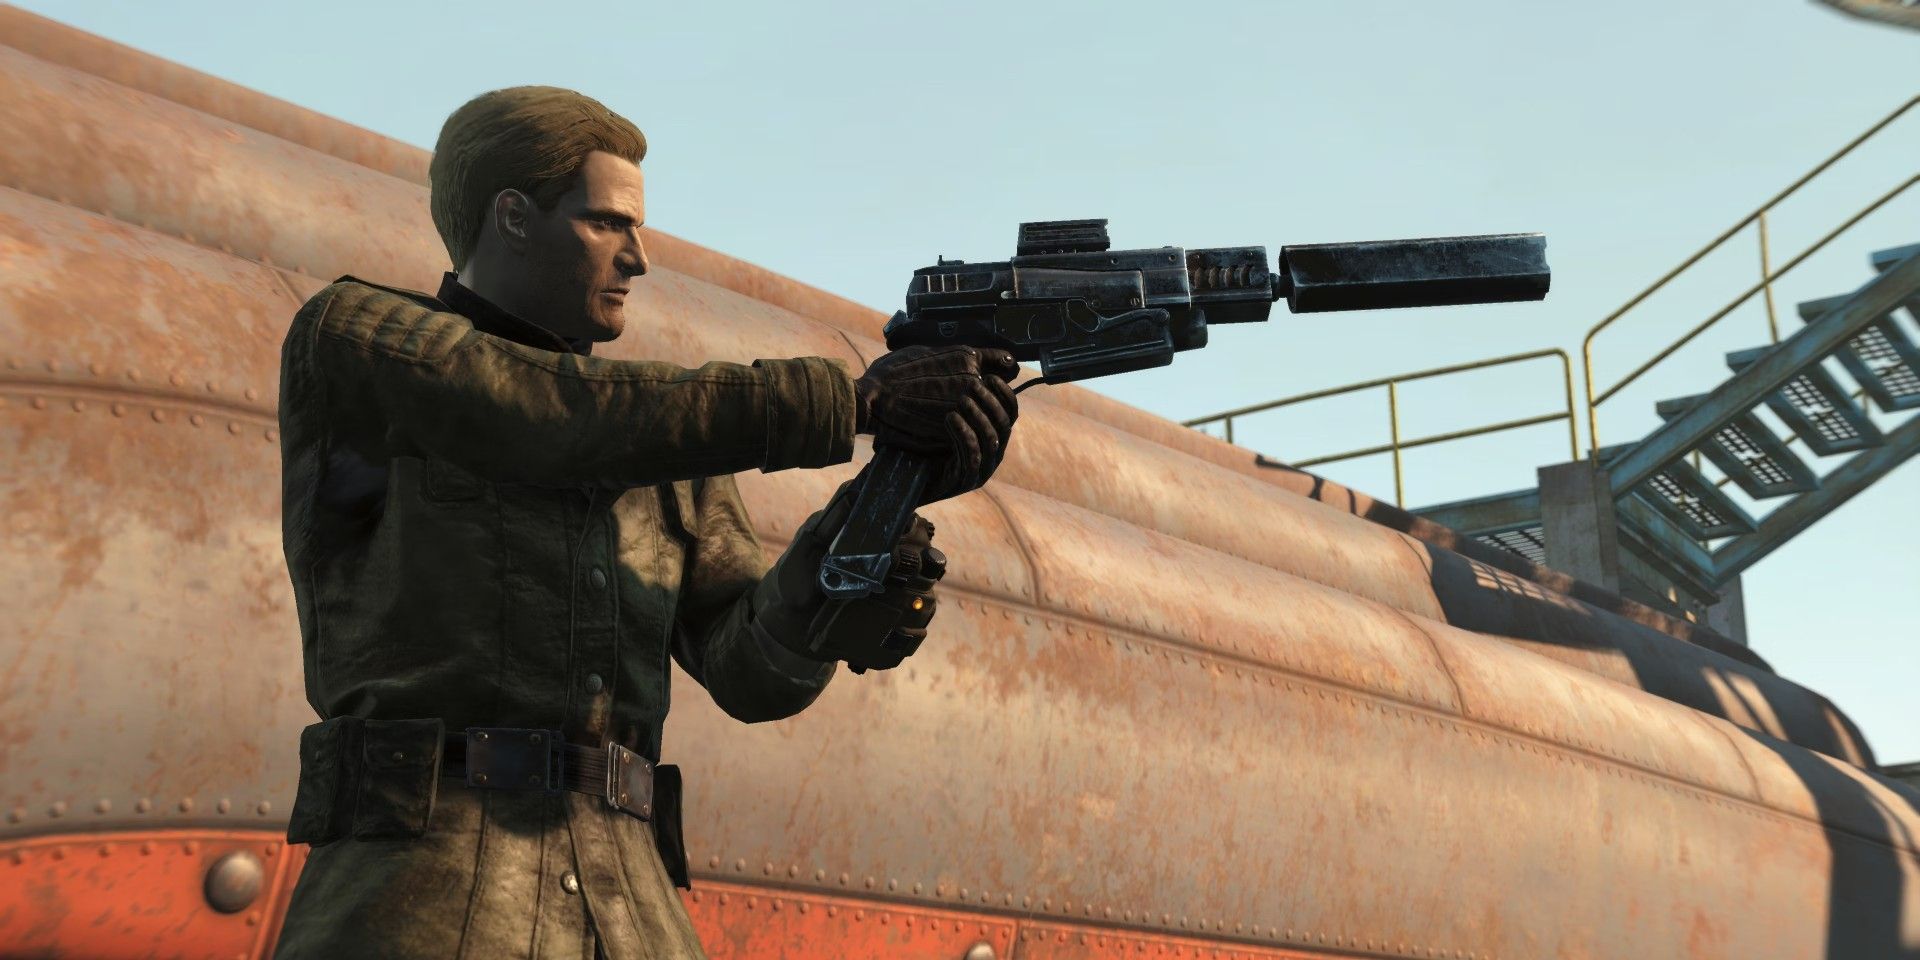 Personagem do Fallout 4 segurando uma arma Enclave enquanto usa equipamento Enclave.